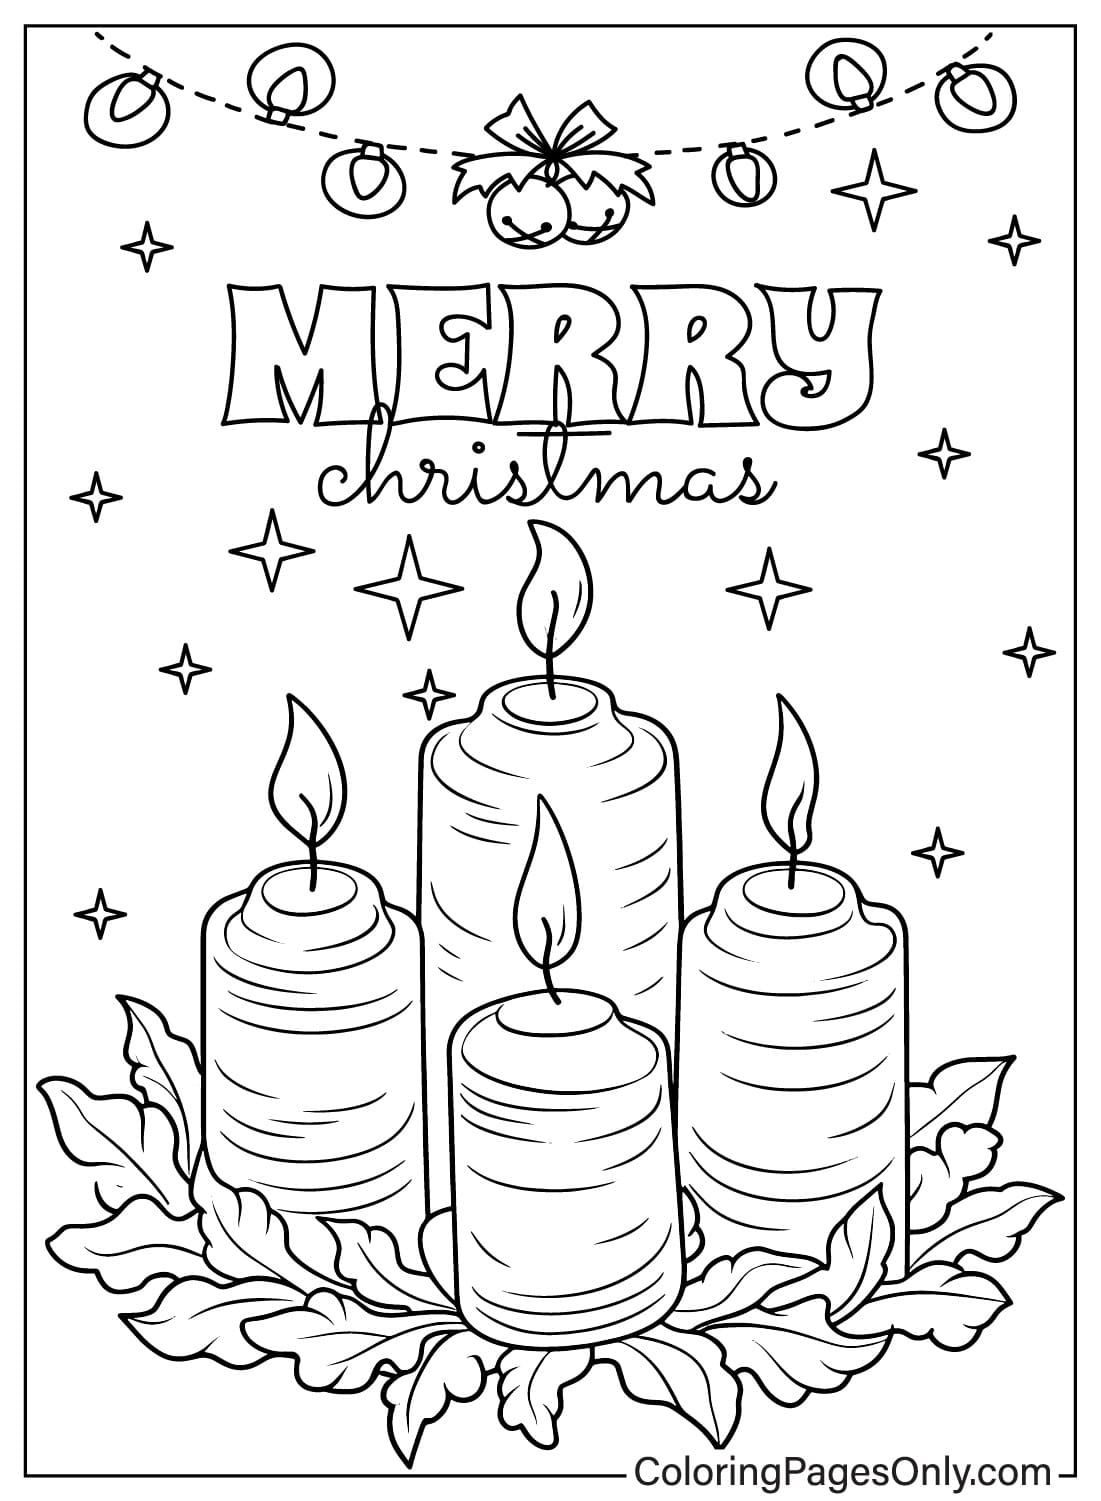 Página para colorear de velas navideñas gratis de velas navideñas